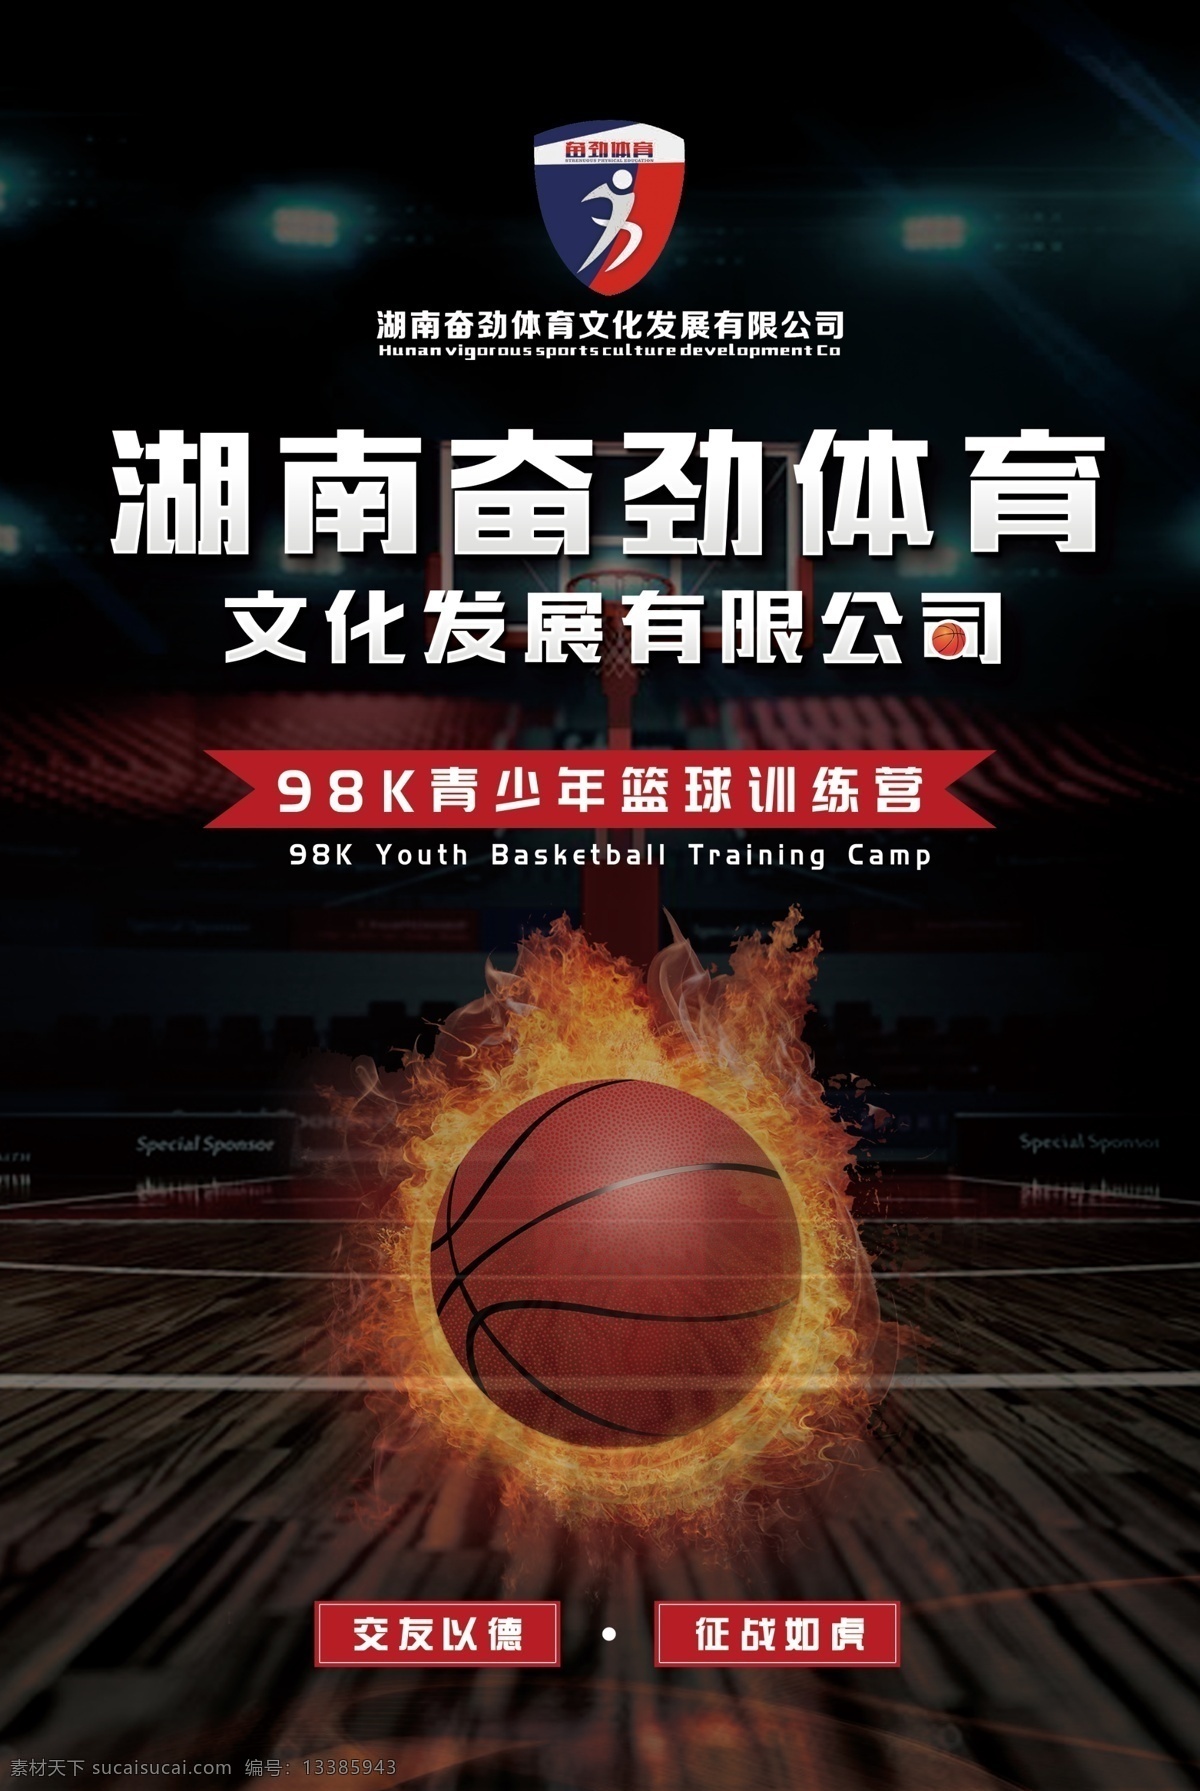 篮球海报 篮球 海报 公司 体育 热血 黑色 炫酷 创意 简约 介绍